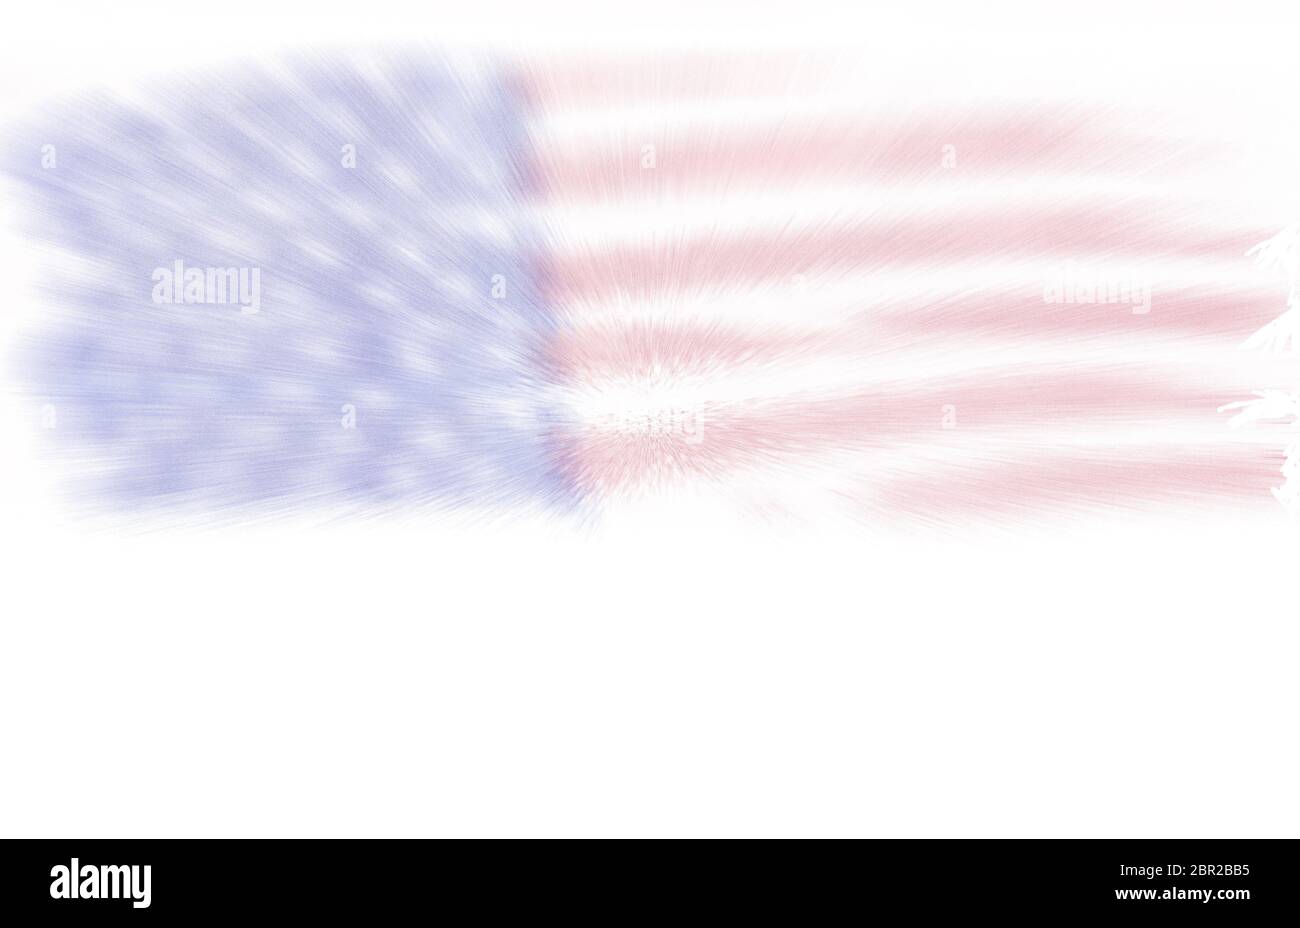 Darstellung der Flagge der Vereinigten Staaten von Amerika mit Bewegungsunschärfe und Platz für Kopie, 4. Juli, Unabhängigkeitstag, Raum für zusätzlichen Text Stockfoto